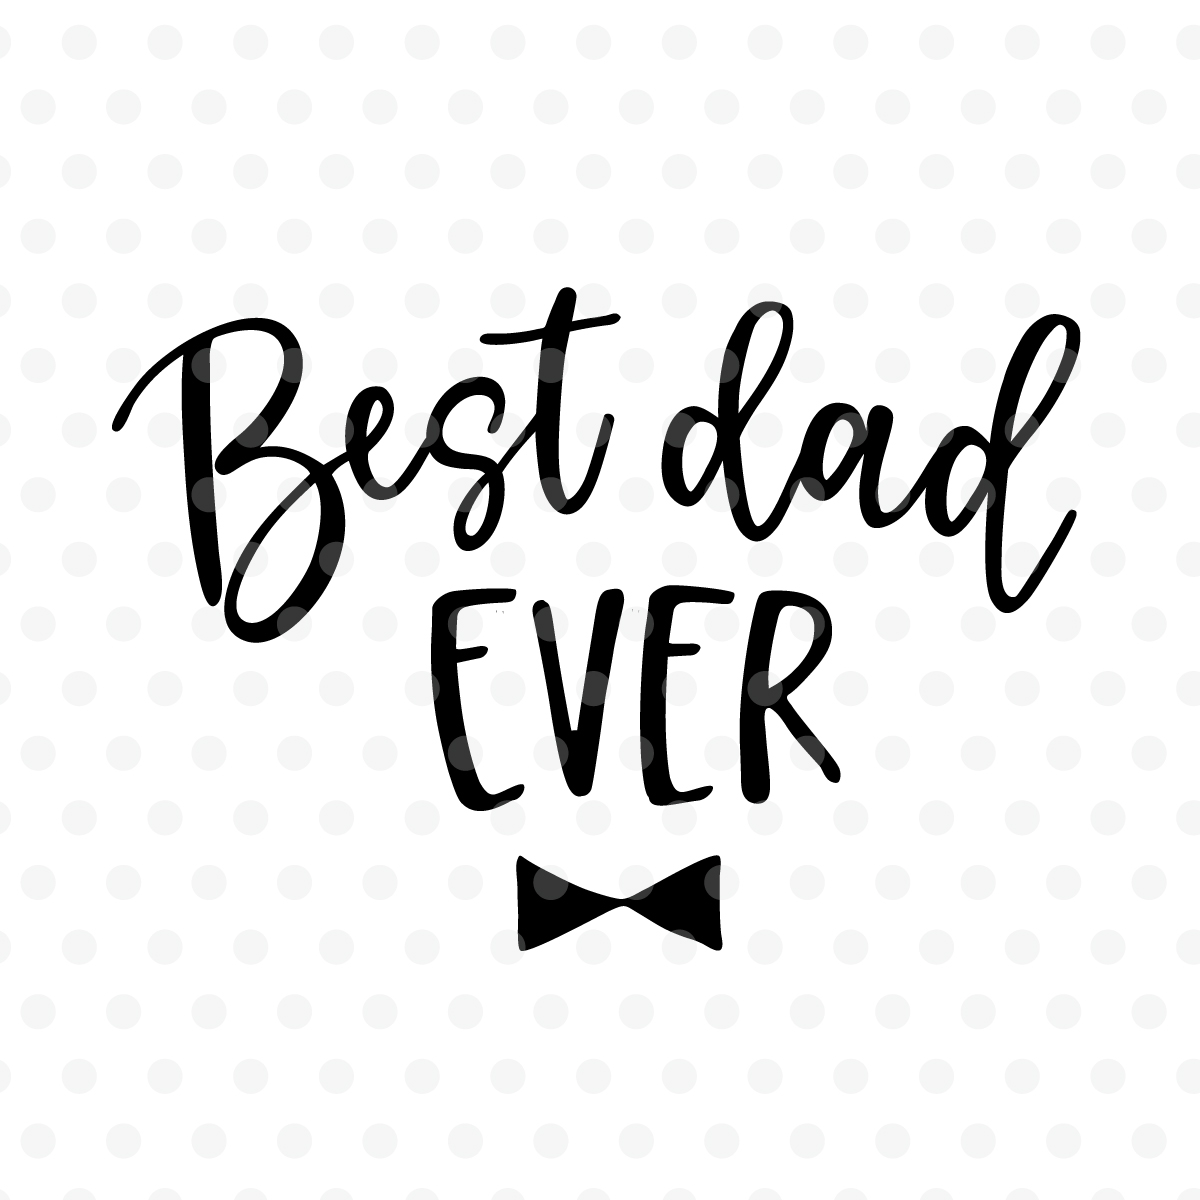 Download Best dad ever SVG, EPS, PNG, DXF